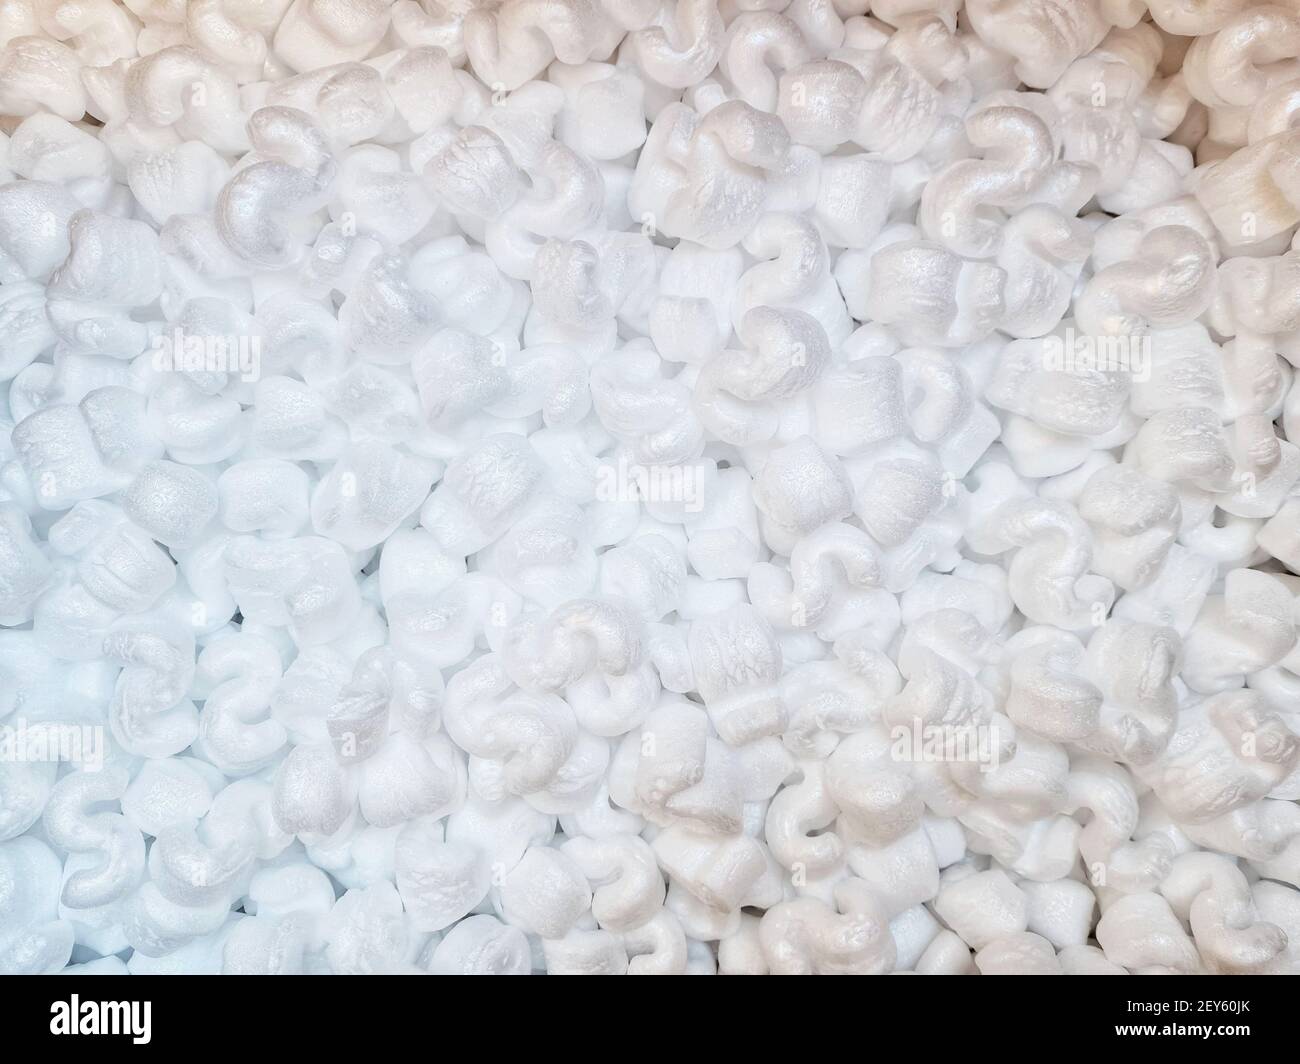 Ein Blick von oben auf Tausende von s-förmigen weißen glänzenden Polystyrol Verpackung Stockfoto